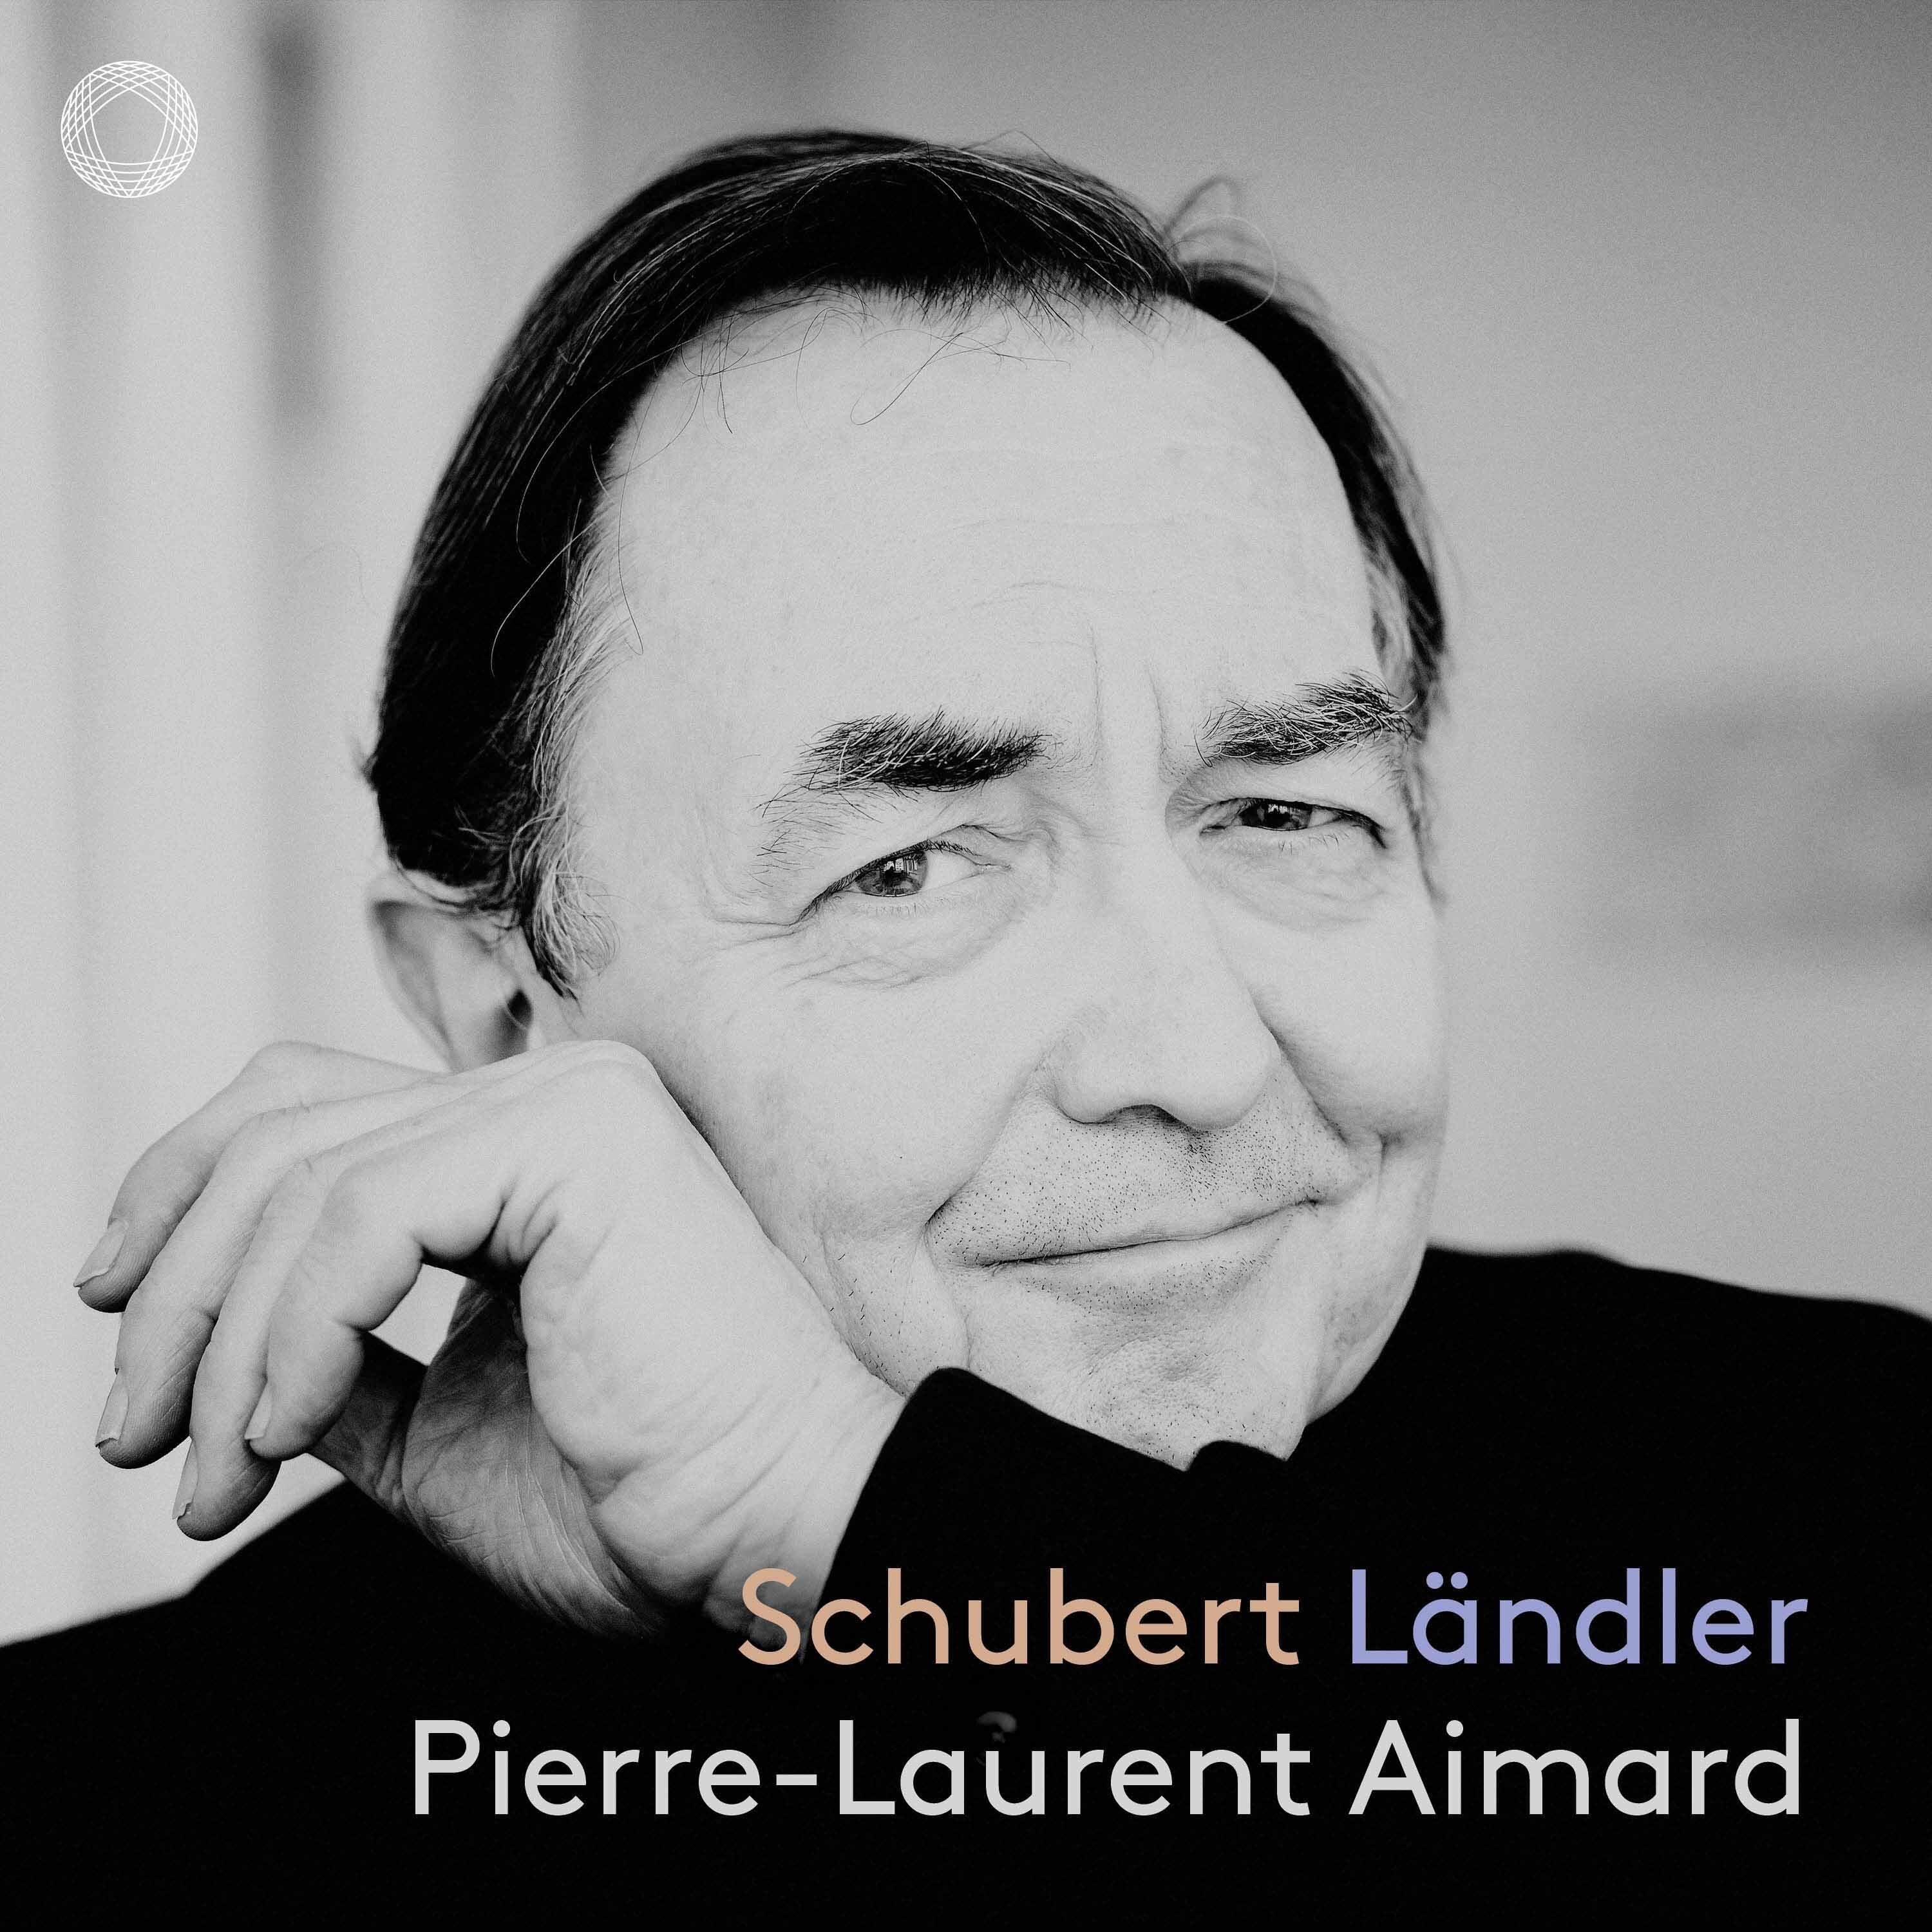 Pierre-Laurent Aimard - 18 German Dances and Ecossaises, Op. 33, D. 783, German Dances: No. 4 in G Major - No. 5 in B Minor - No. 11 in E Minor